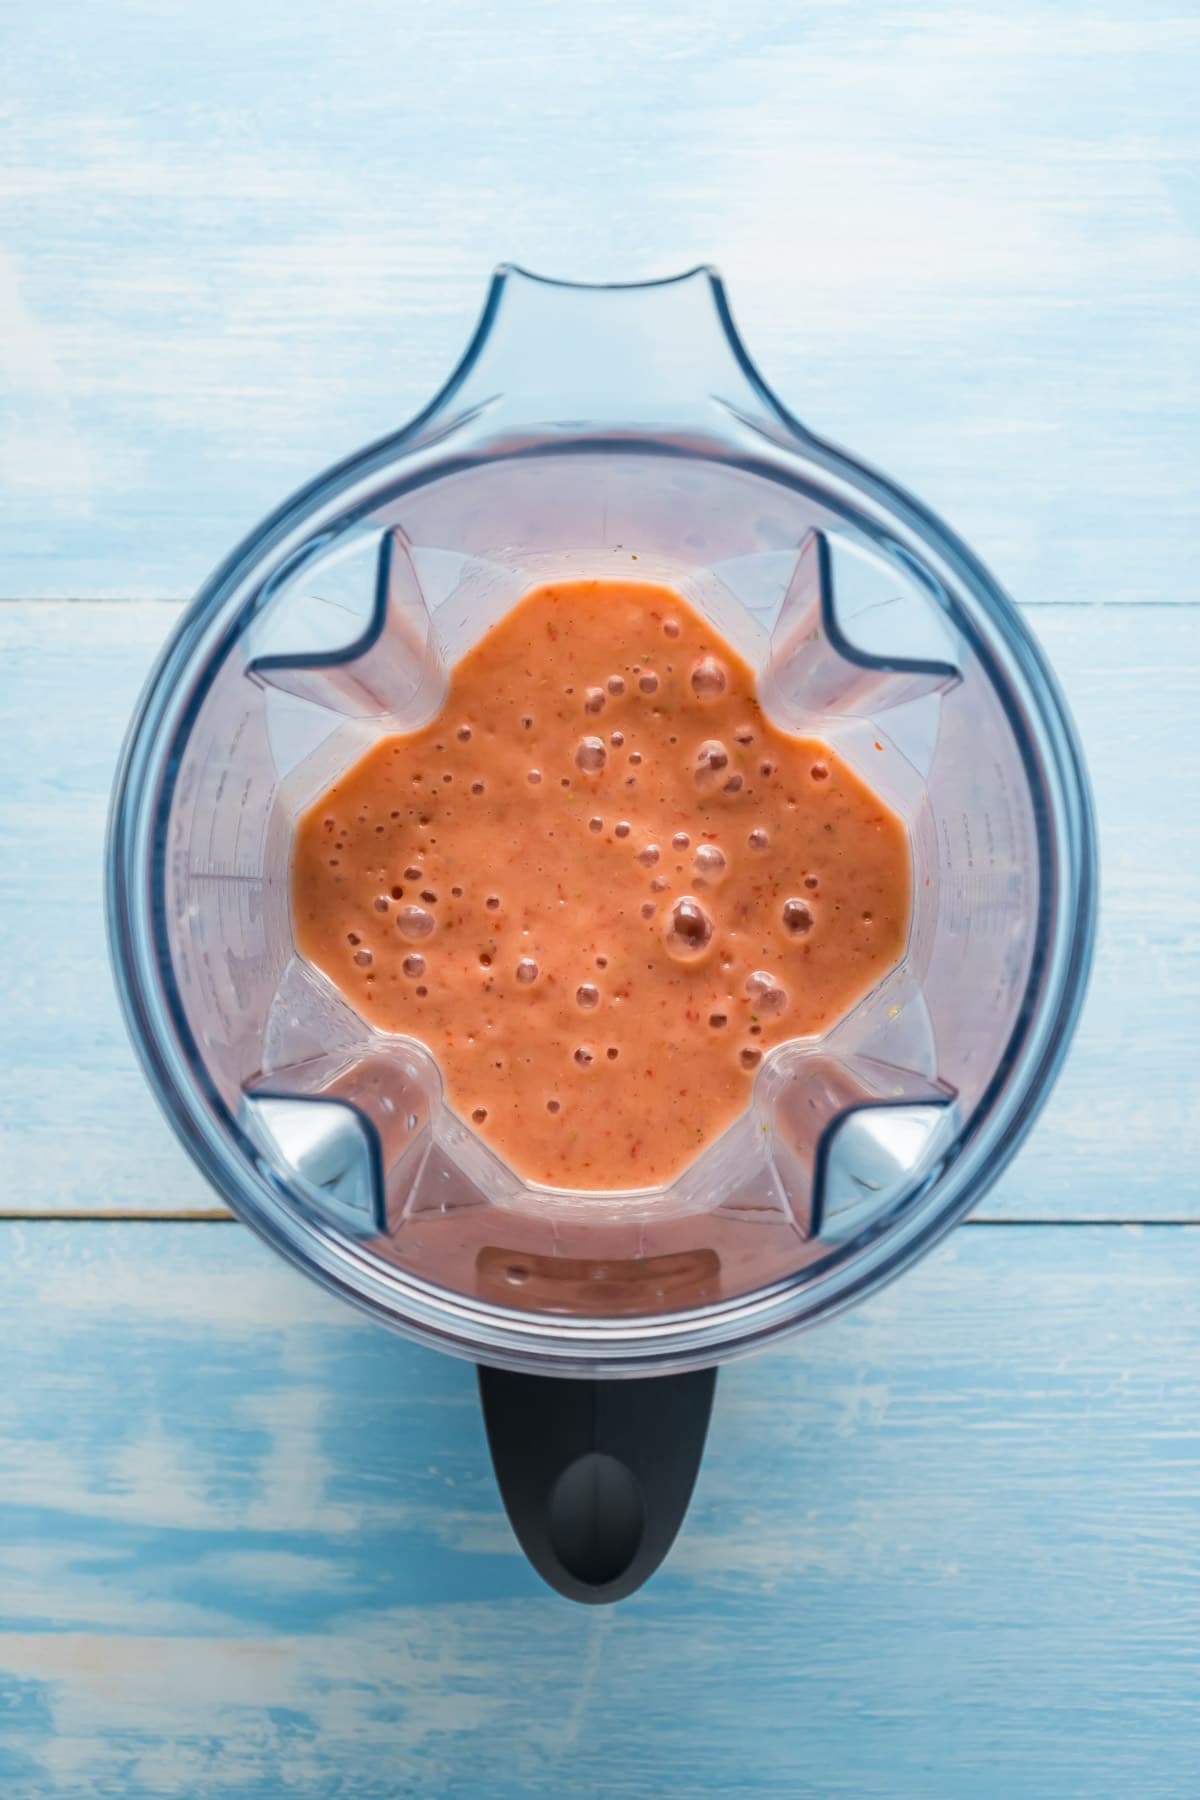 Blended strawberry mango smoothie in a blender jug.